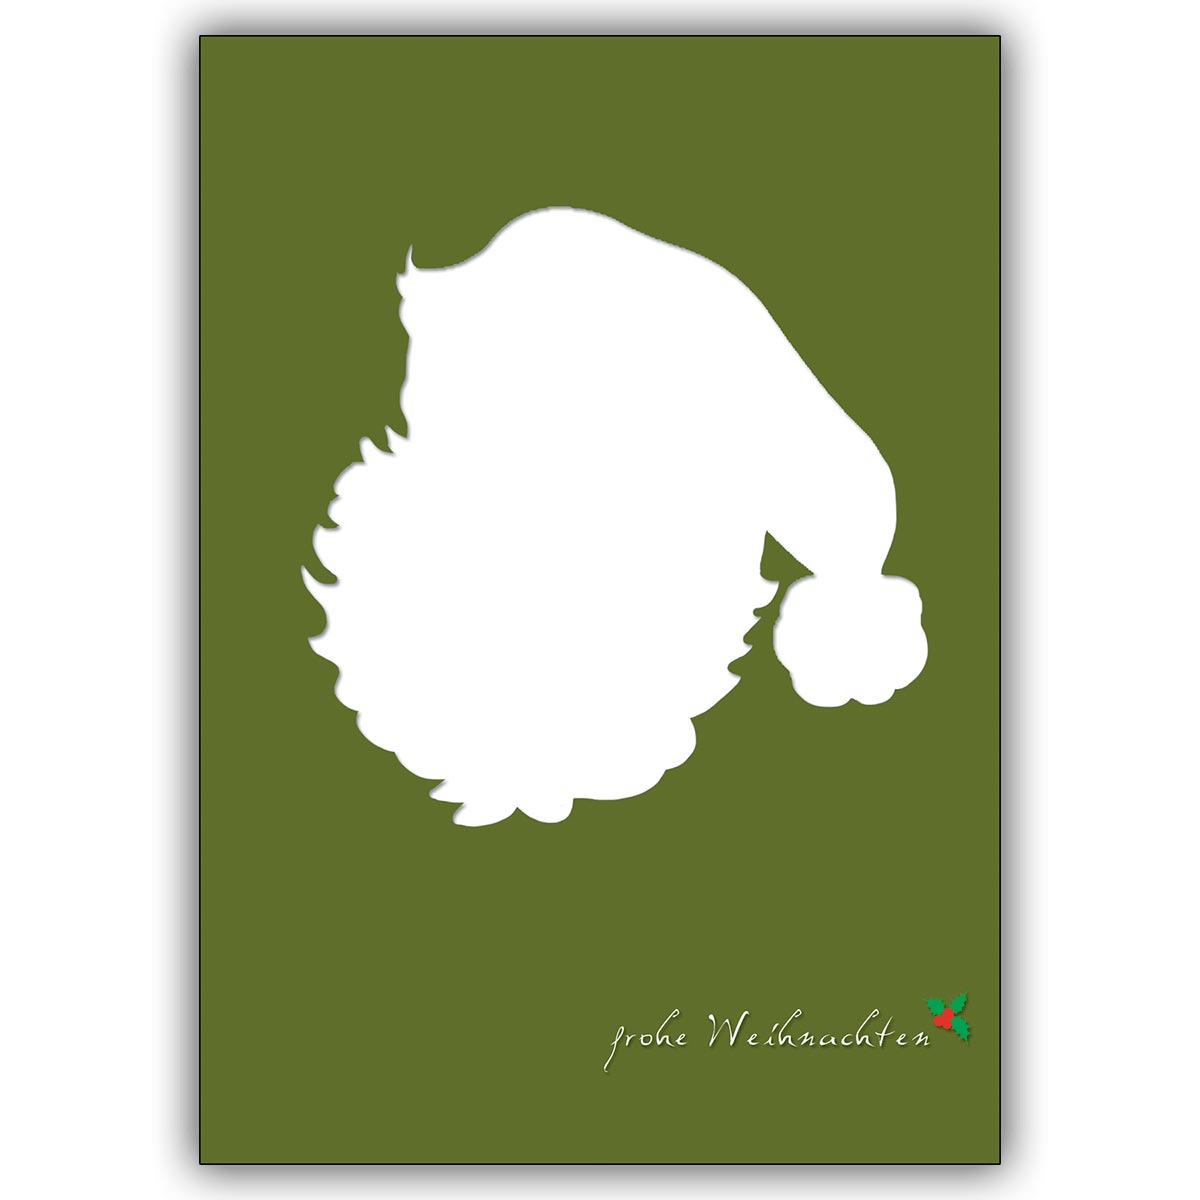 Coole Weihnachtskarte Mit Weihnachtsmann Silhouette Auf Grun Frohe Weihnachten Kartenkaufrausch De